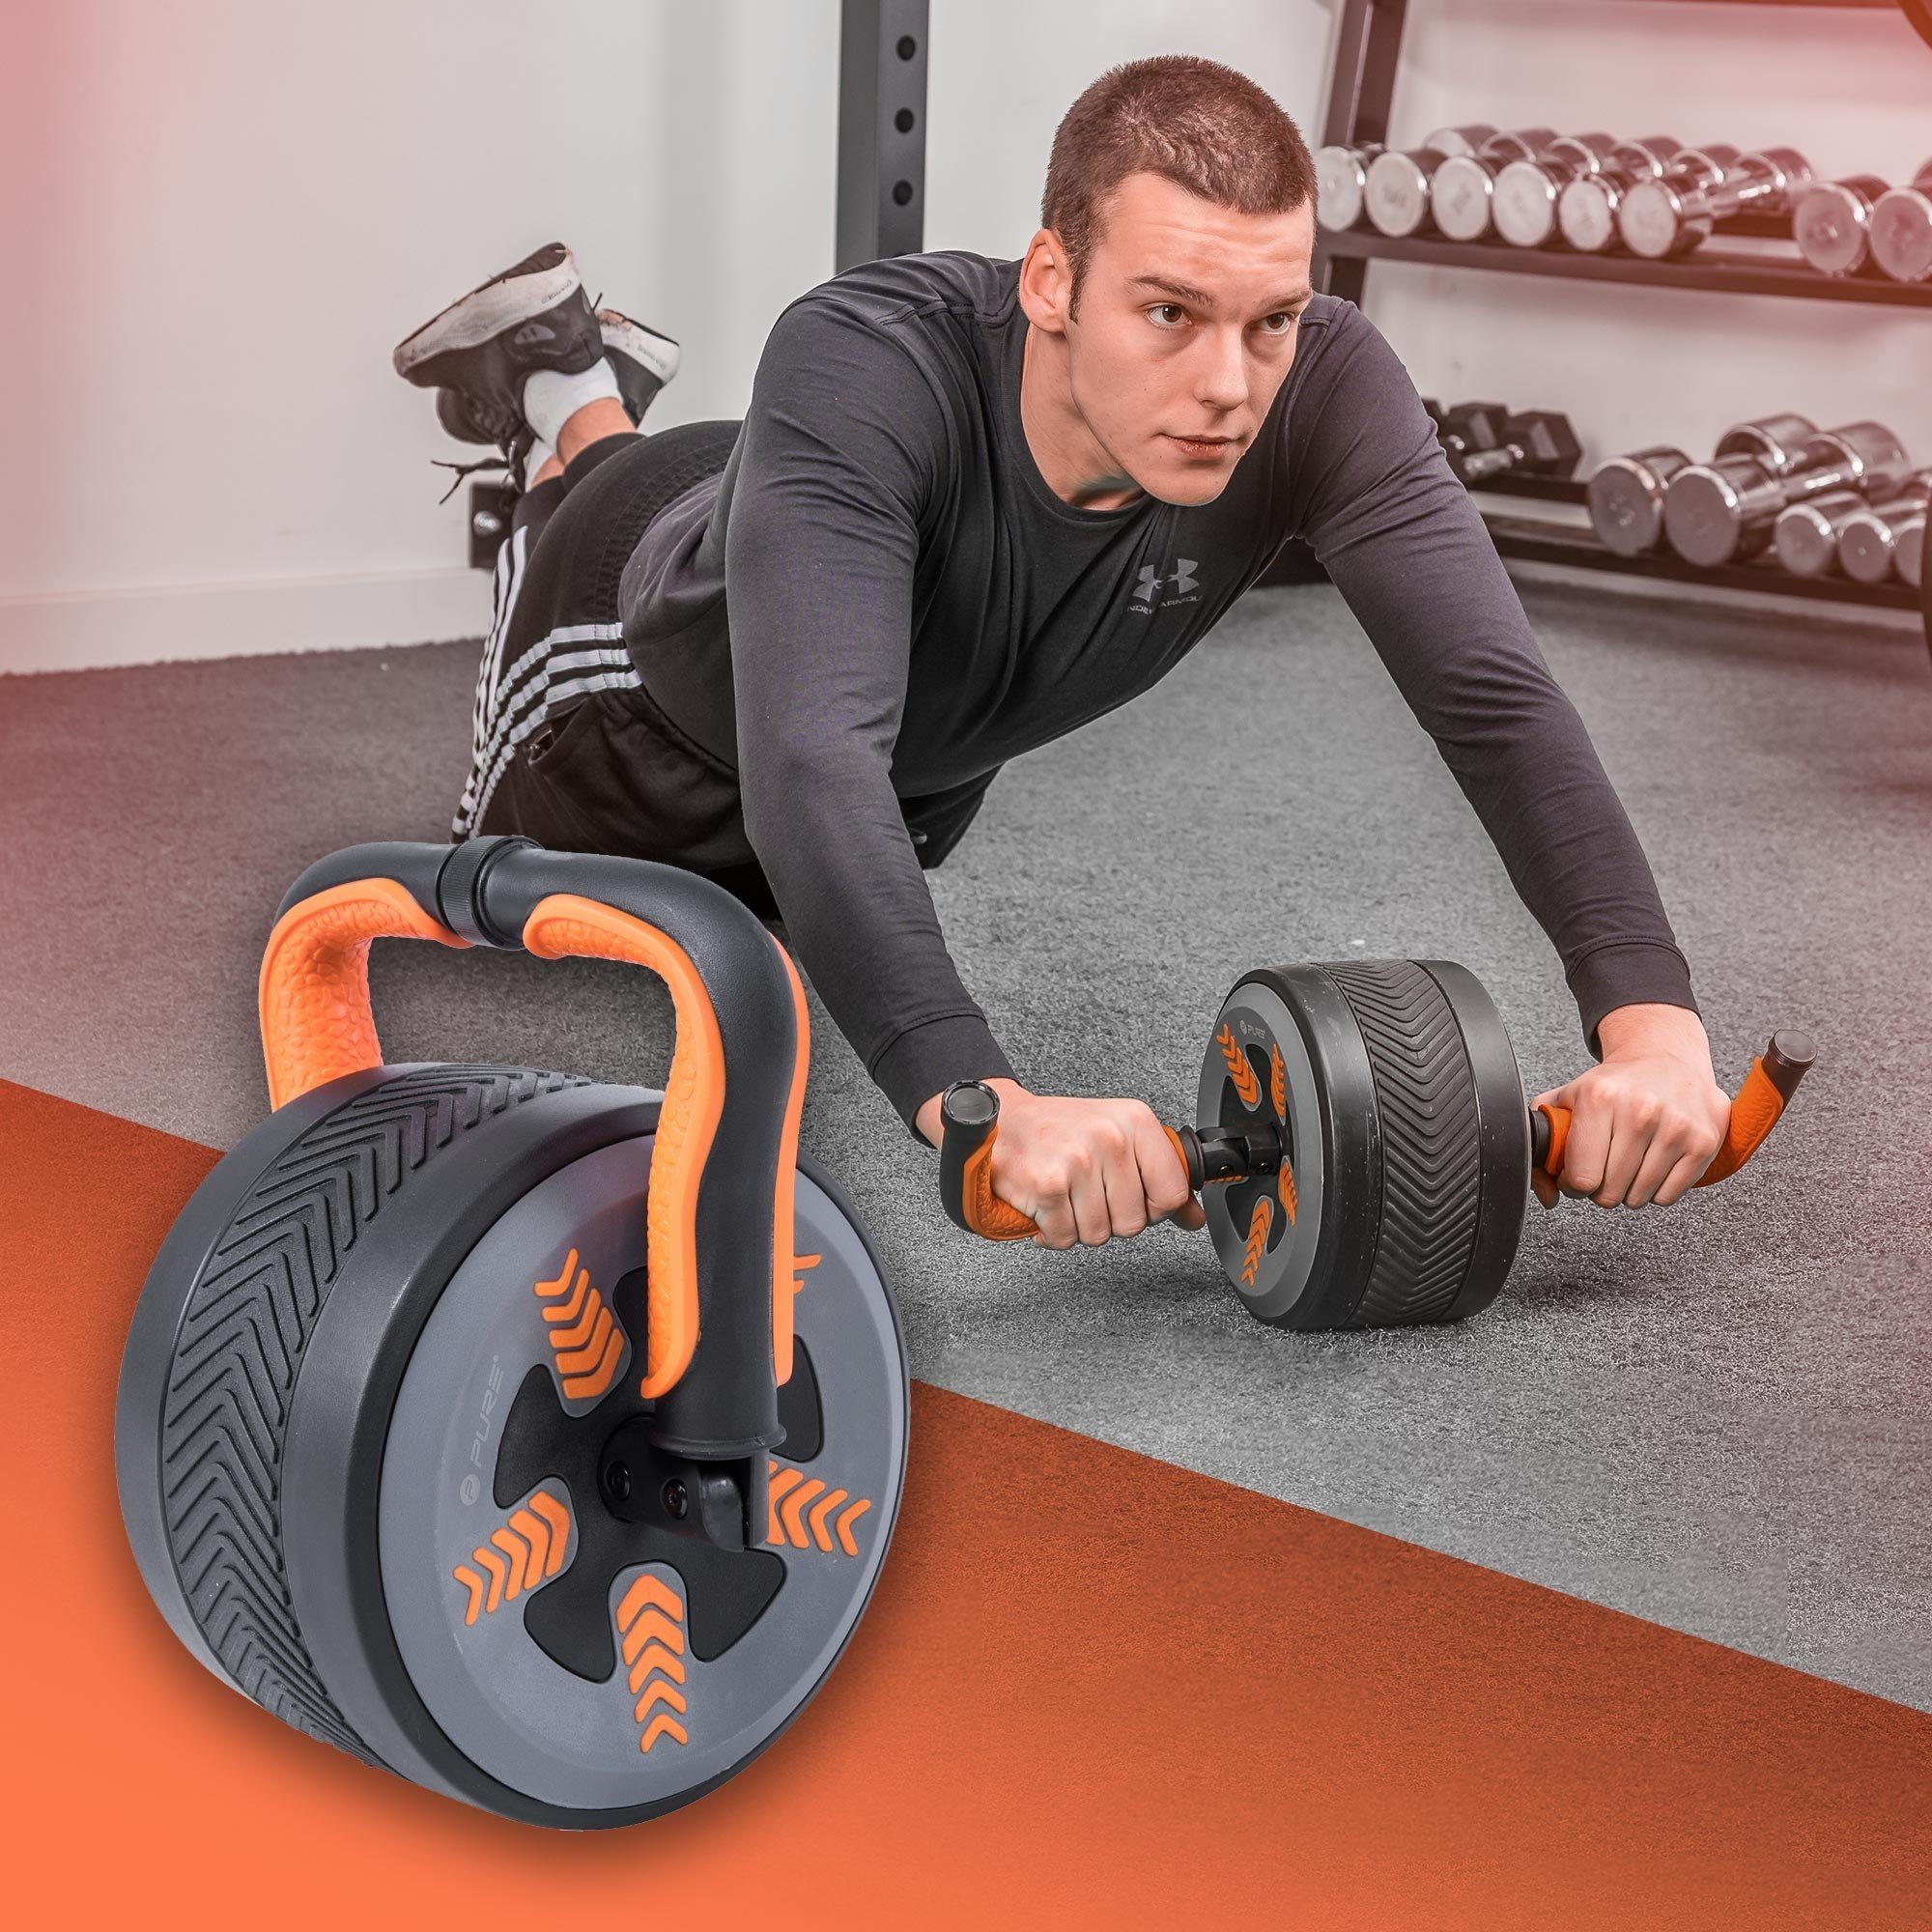 Pure 2 Multifunktions-Bauchrad, Improve 3kg Bauchmuskeln, 2in1 AB-Roller Fitness Bauchroller Bauchtrainer/Kettlebell für 2in1